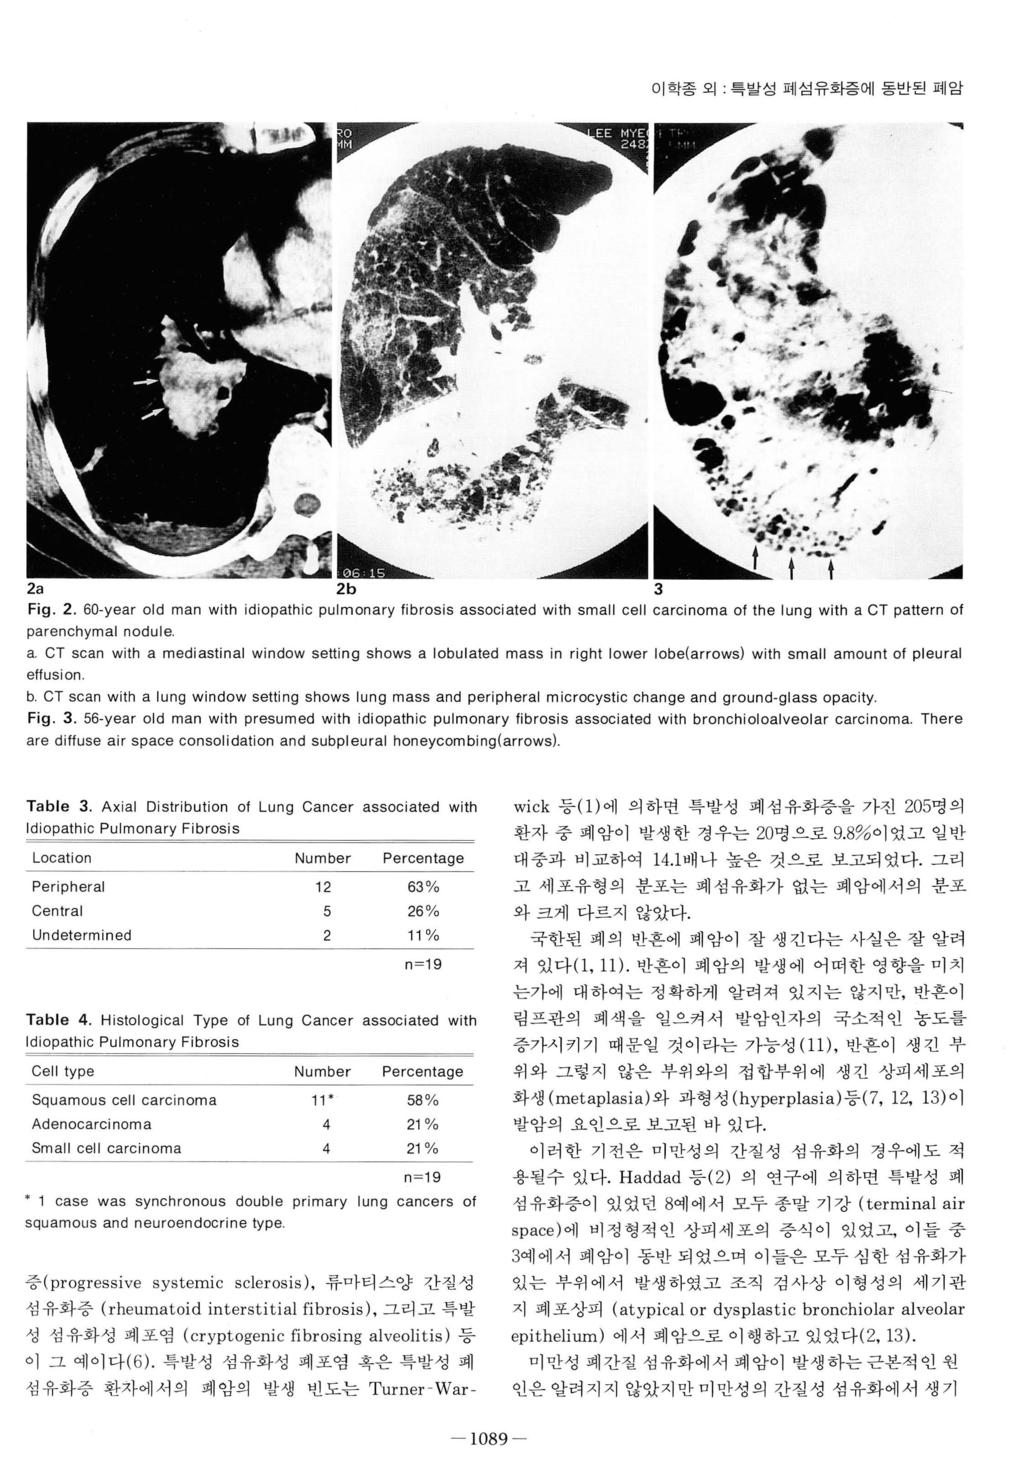 1089 - 이학종외 특발성폐섬유화증에동반된폐암 활짧 ~ 鳳 i - : : ii 순..-... 2a 2b 3 Fig. 2. 60-year old man with idiopathic pulmonary librosis associated with small cell carcinoma 01 the lung with a CT pattern 01 parenchymal nodule a.